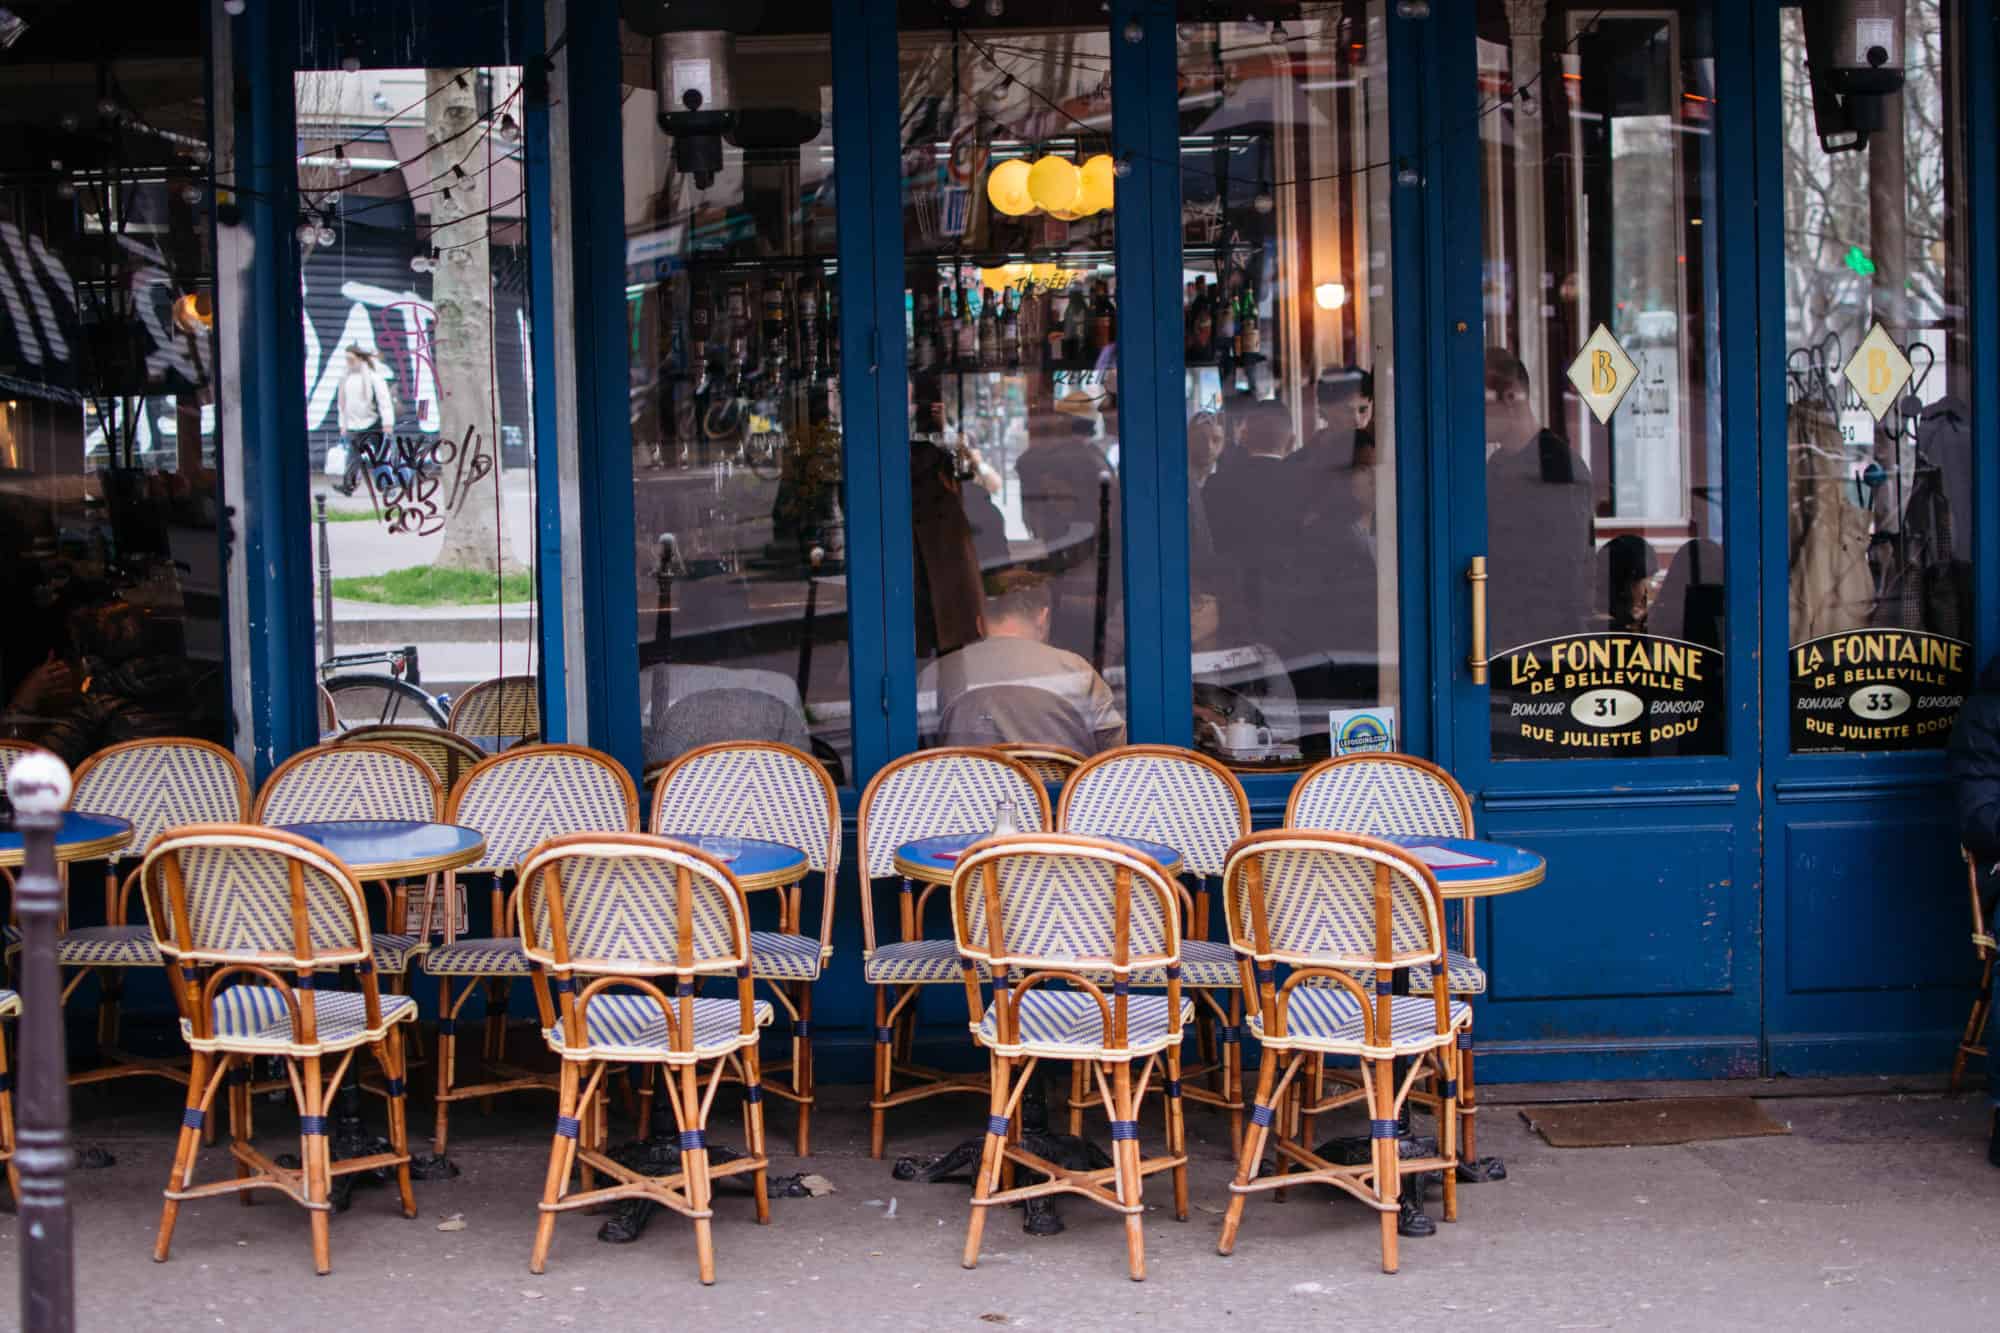 Café tables and chairs sit outside La Fontaine de Belleville, a french coffee shop in Paris' 10th arrondissement.